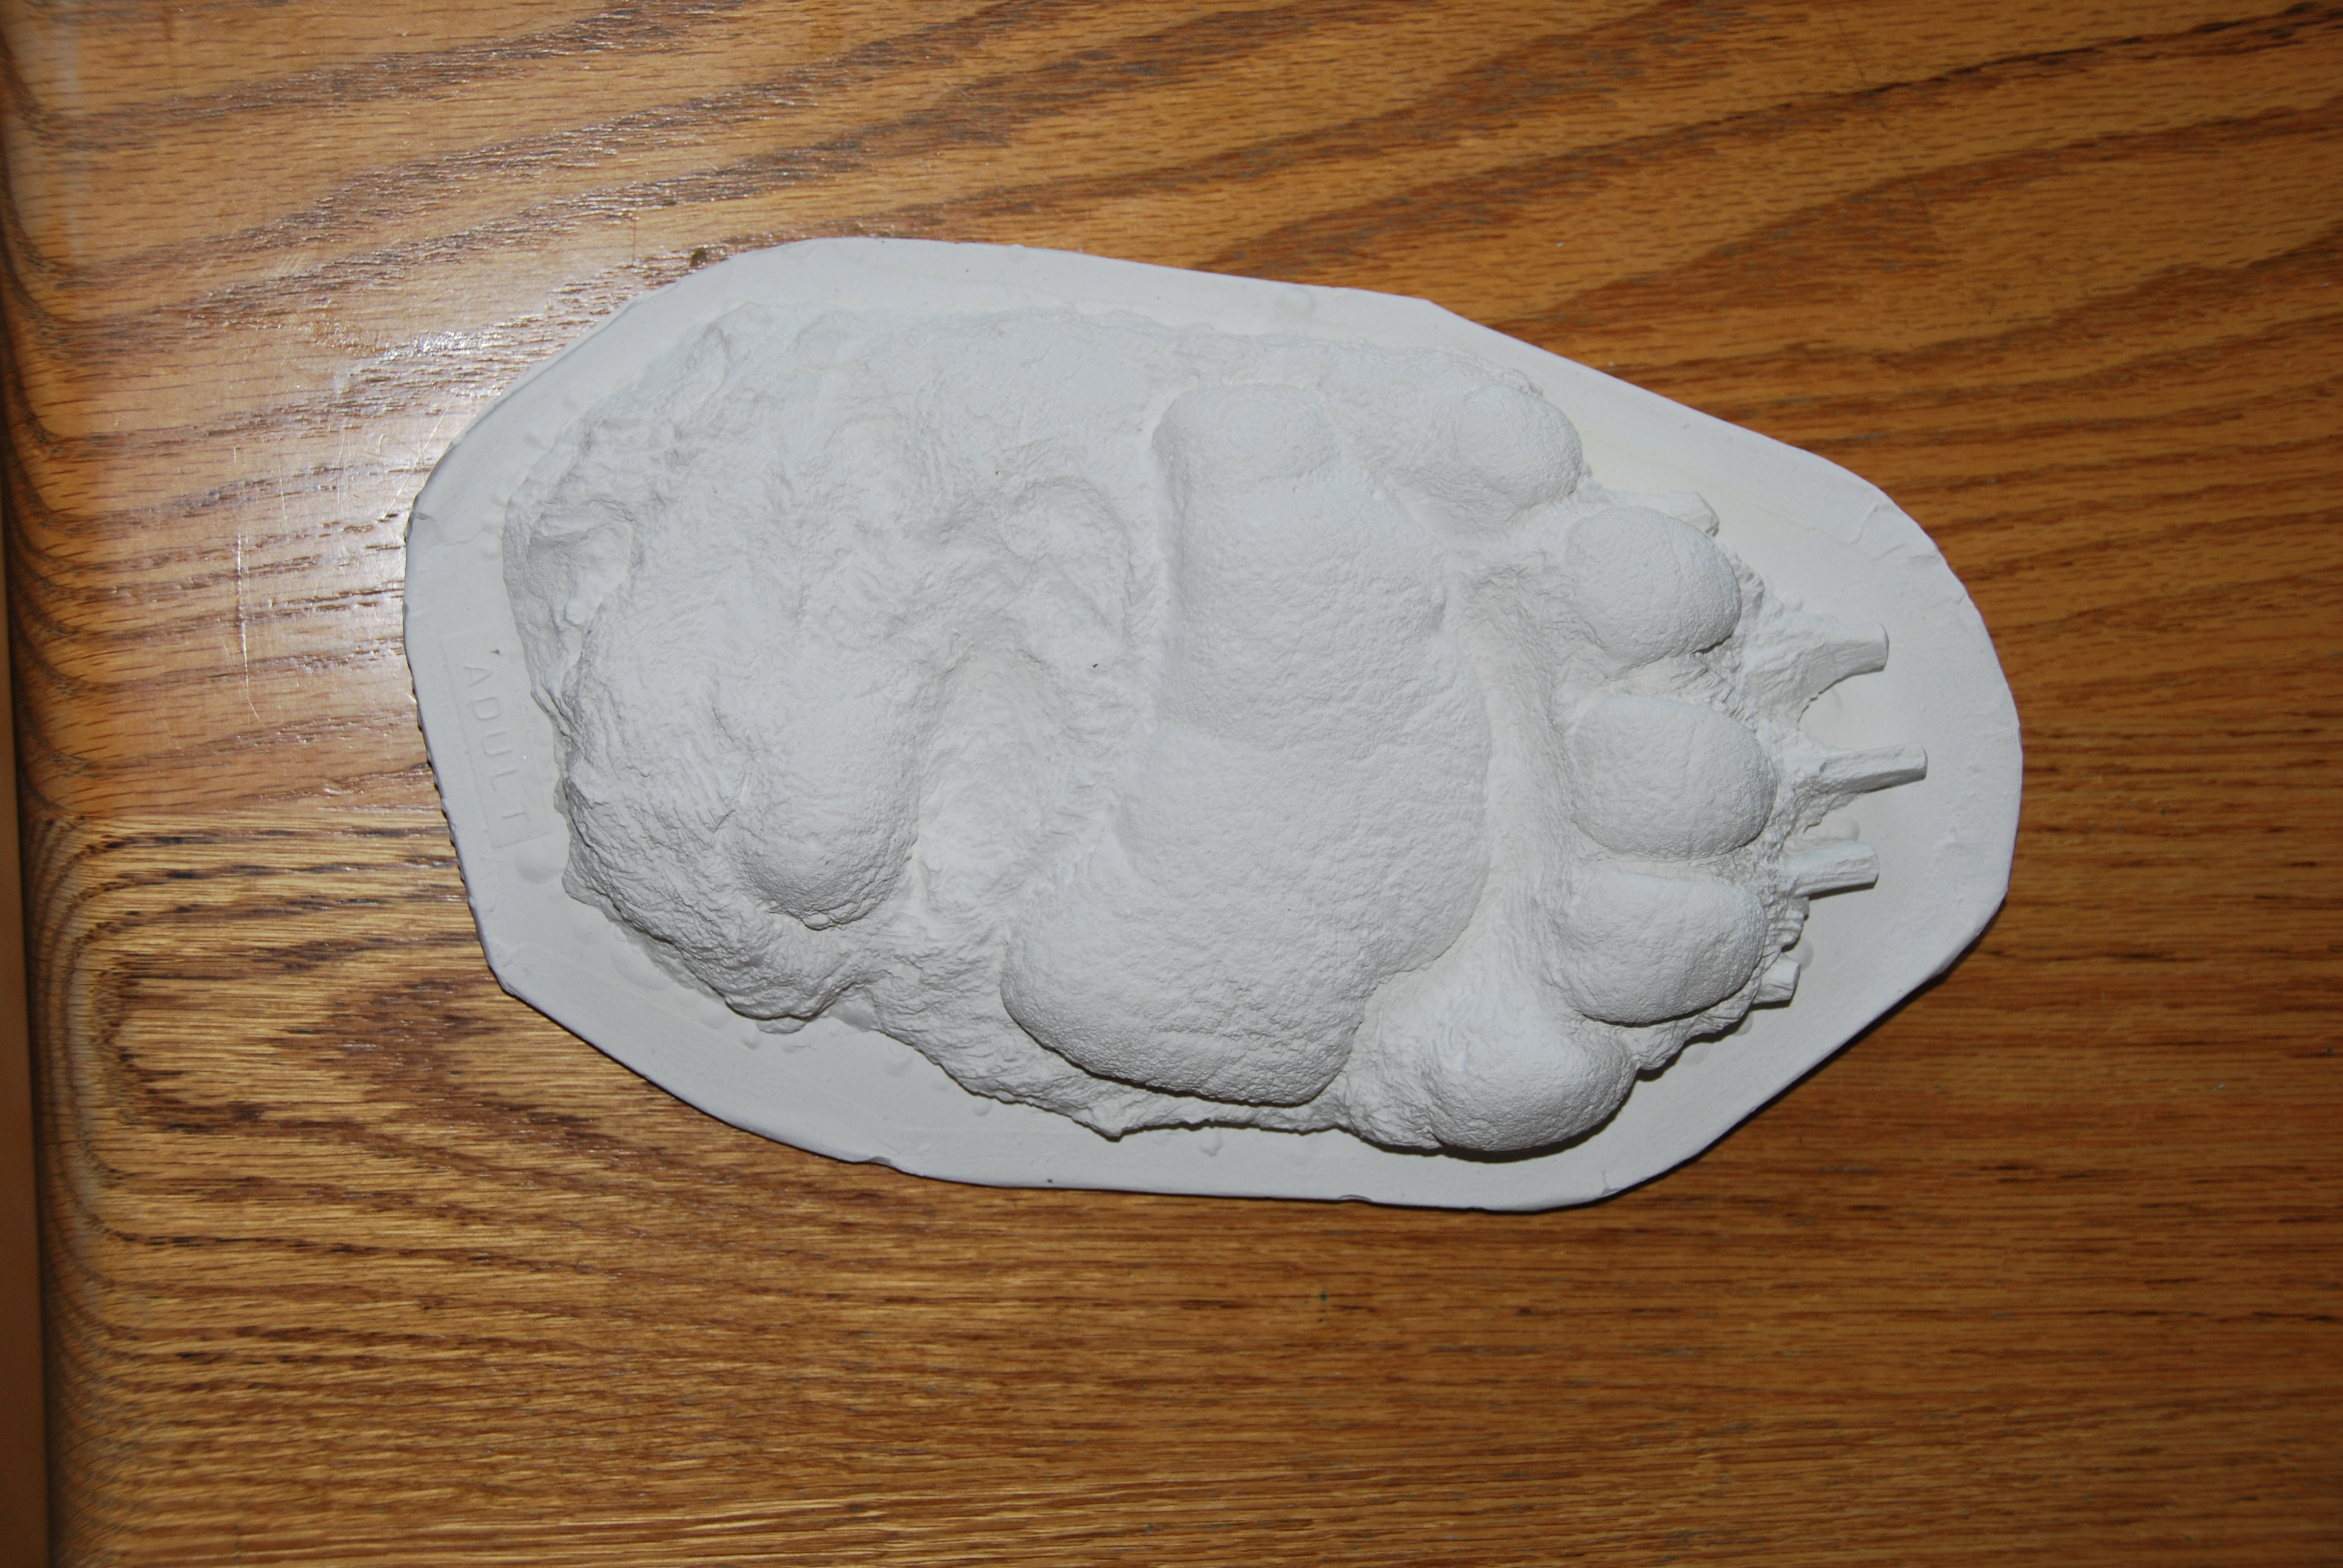 Black bear plaster cast footprint